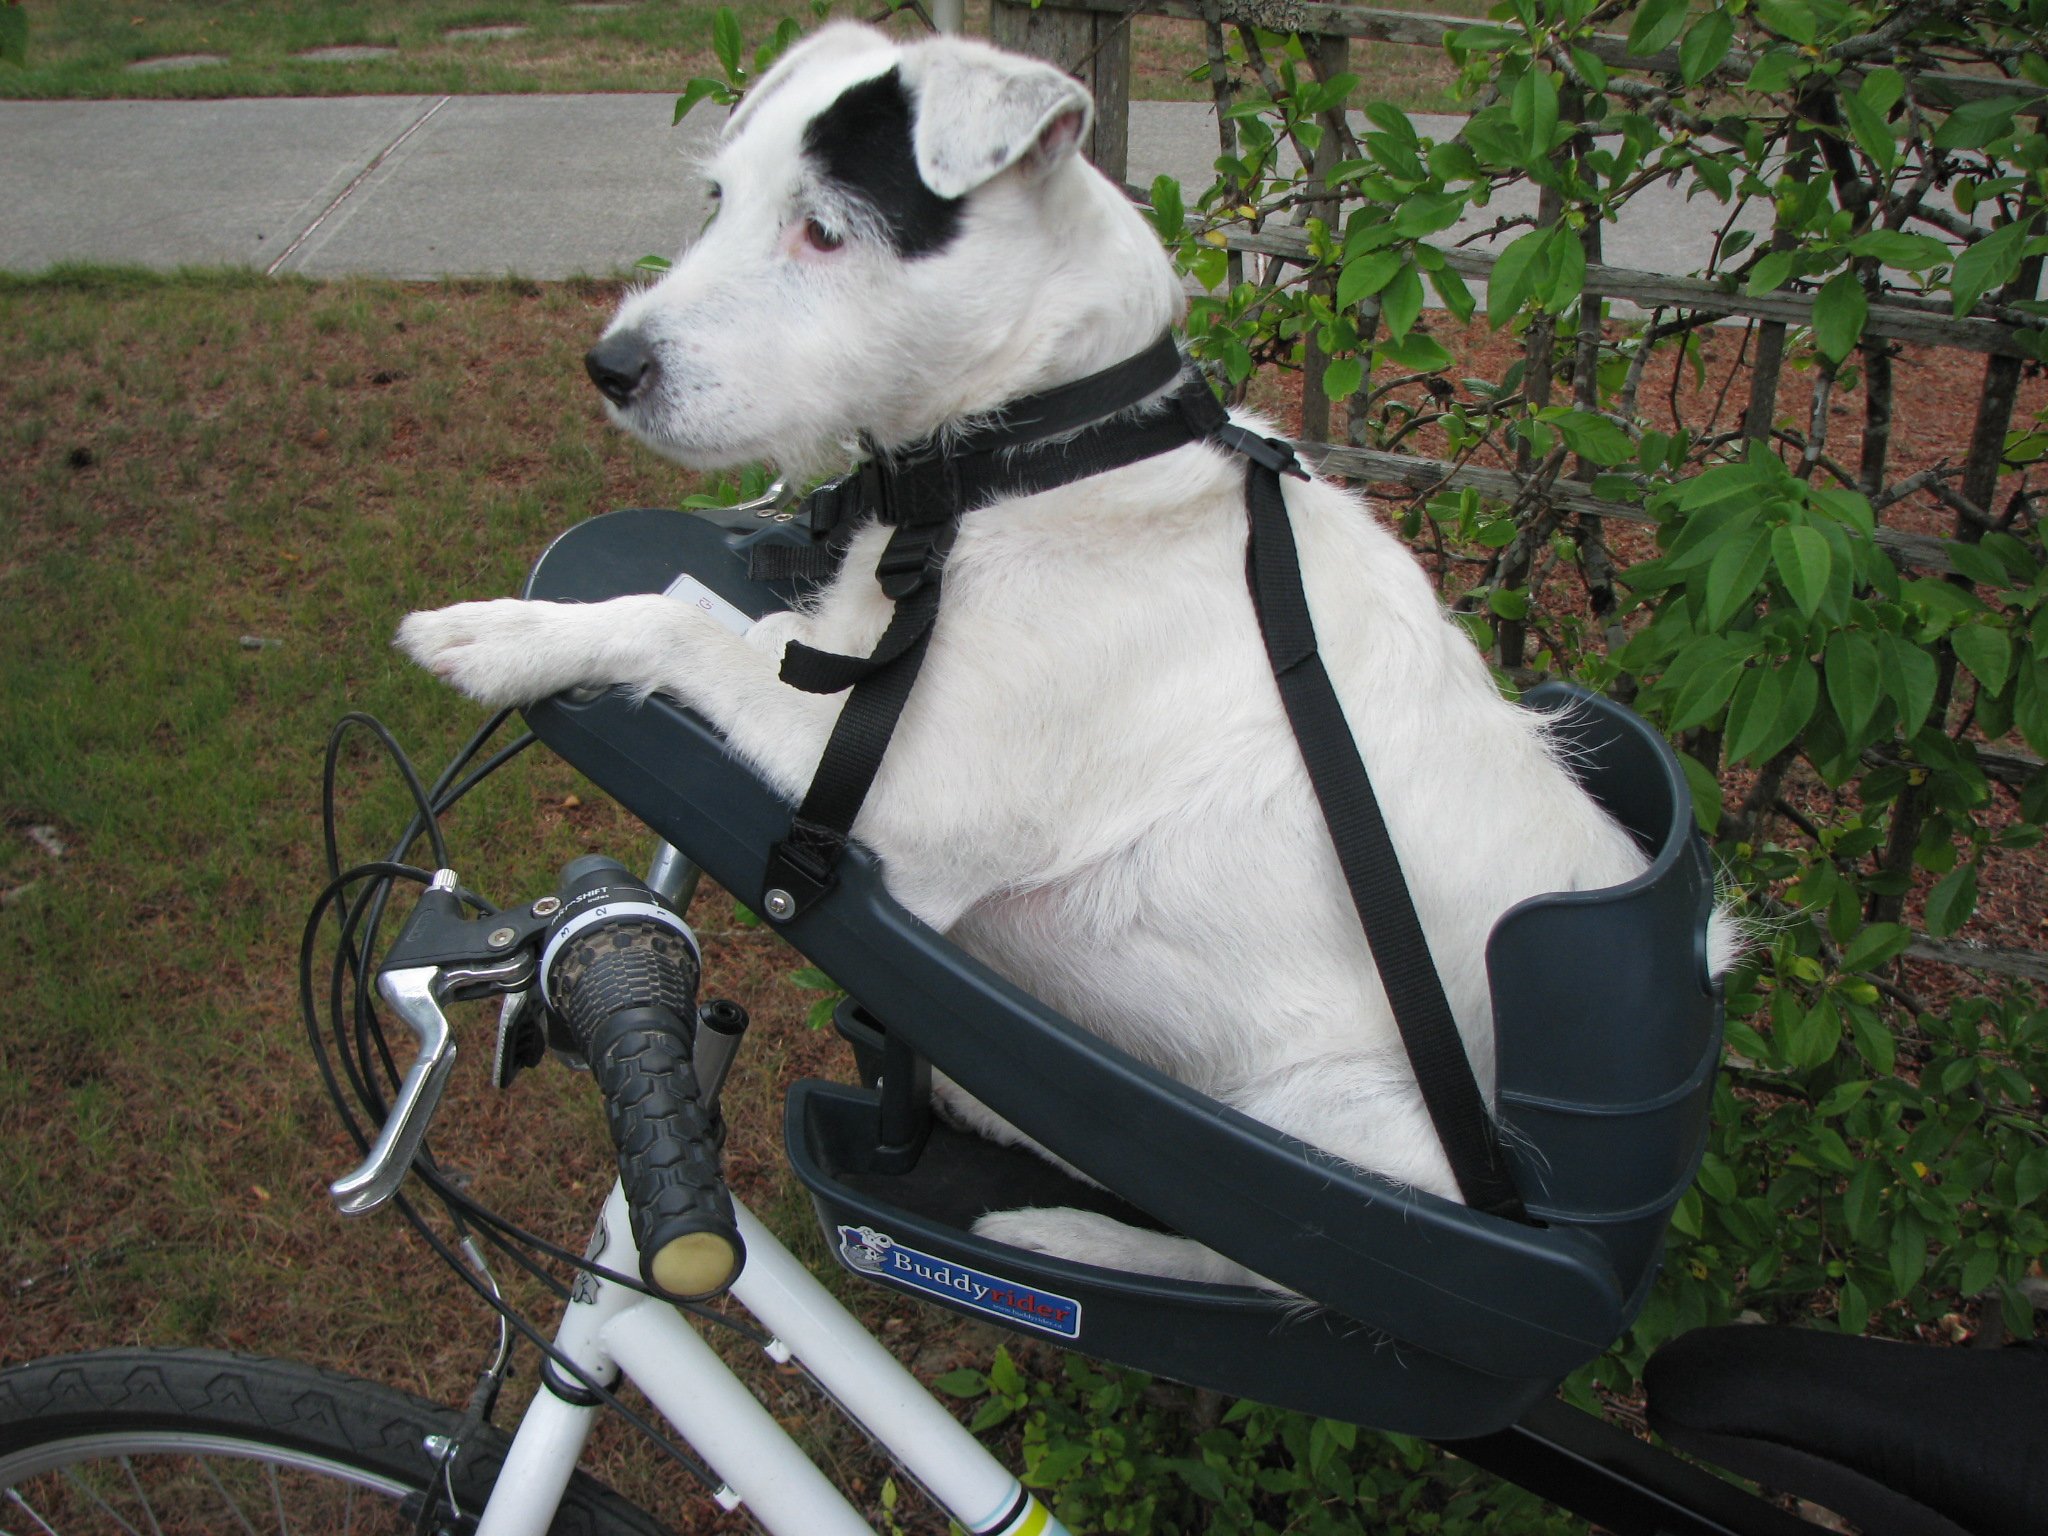 Pet racer. Buddy Rider кресло для собак. Велосидение для собак buddy Rider. Велосипедное сиденье buddy Rider. Велокресло для собак buddy Rider.